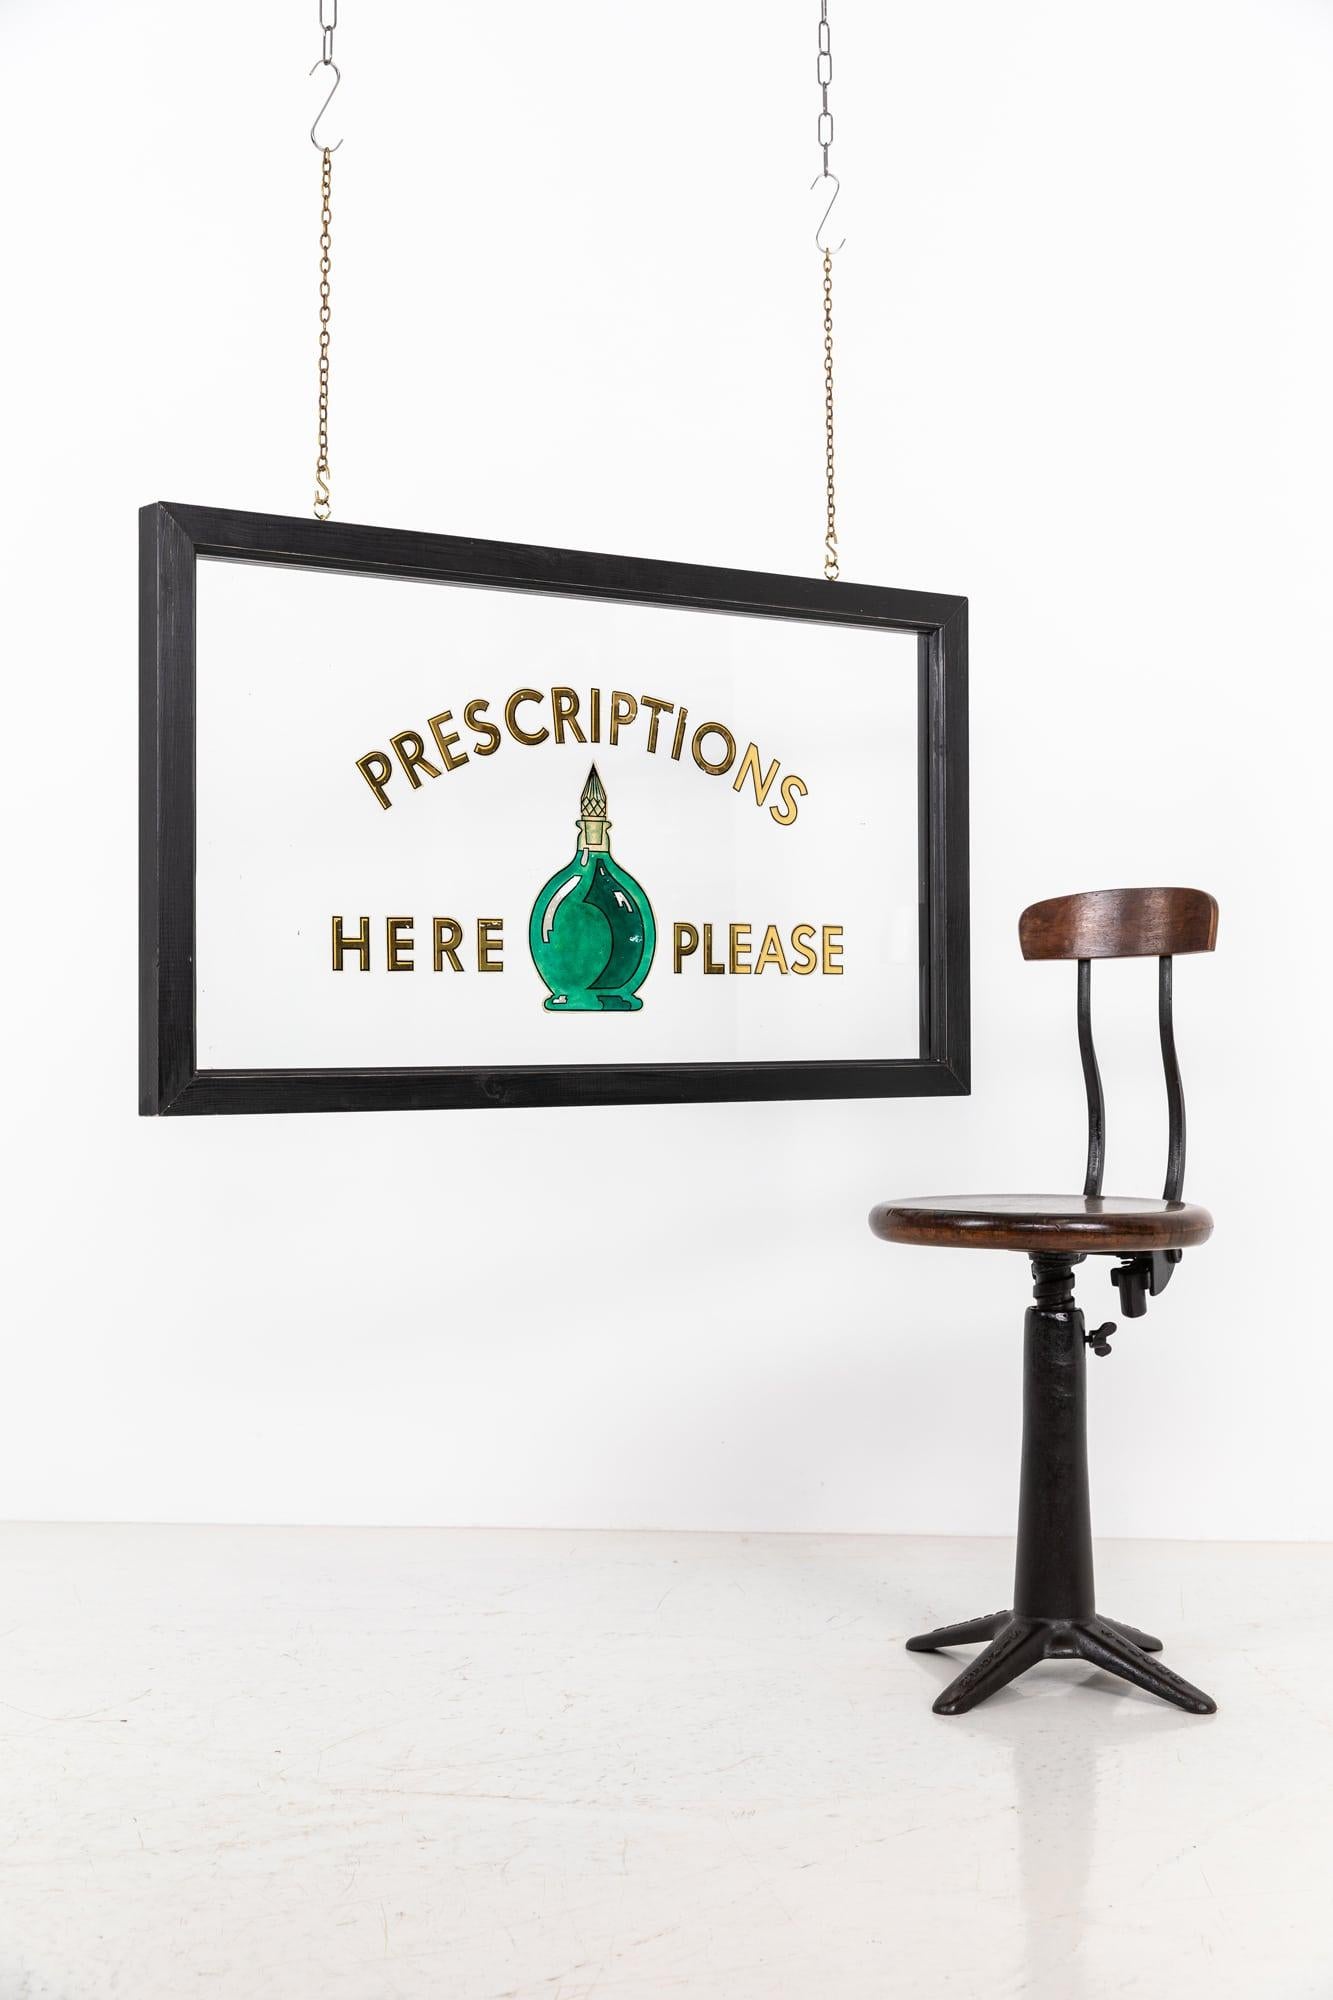 Une élégante enseigne de pharmacien en verre peinte à l'envers. C.C.C.

Lettre dorée et tourie verte, verso peint sur verre épais transparent. Il est inséré dans un cadre simple en bois ébonisé. 